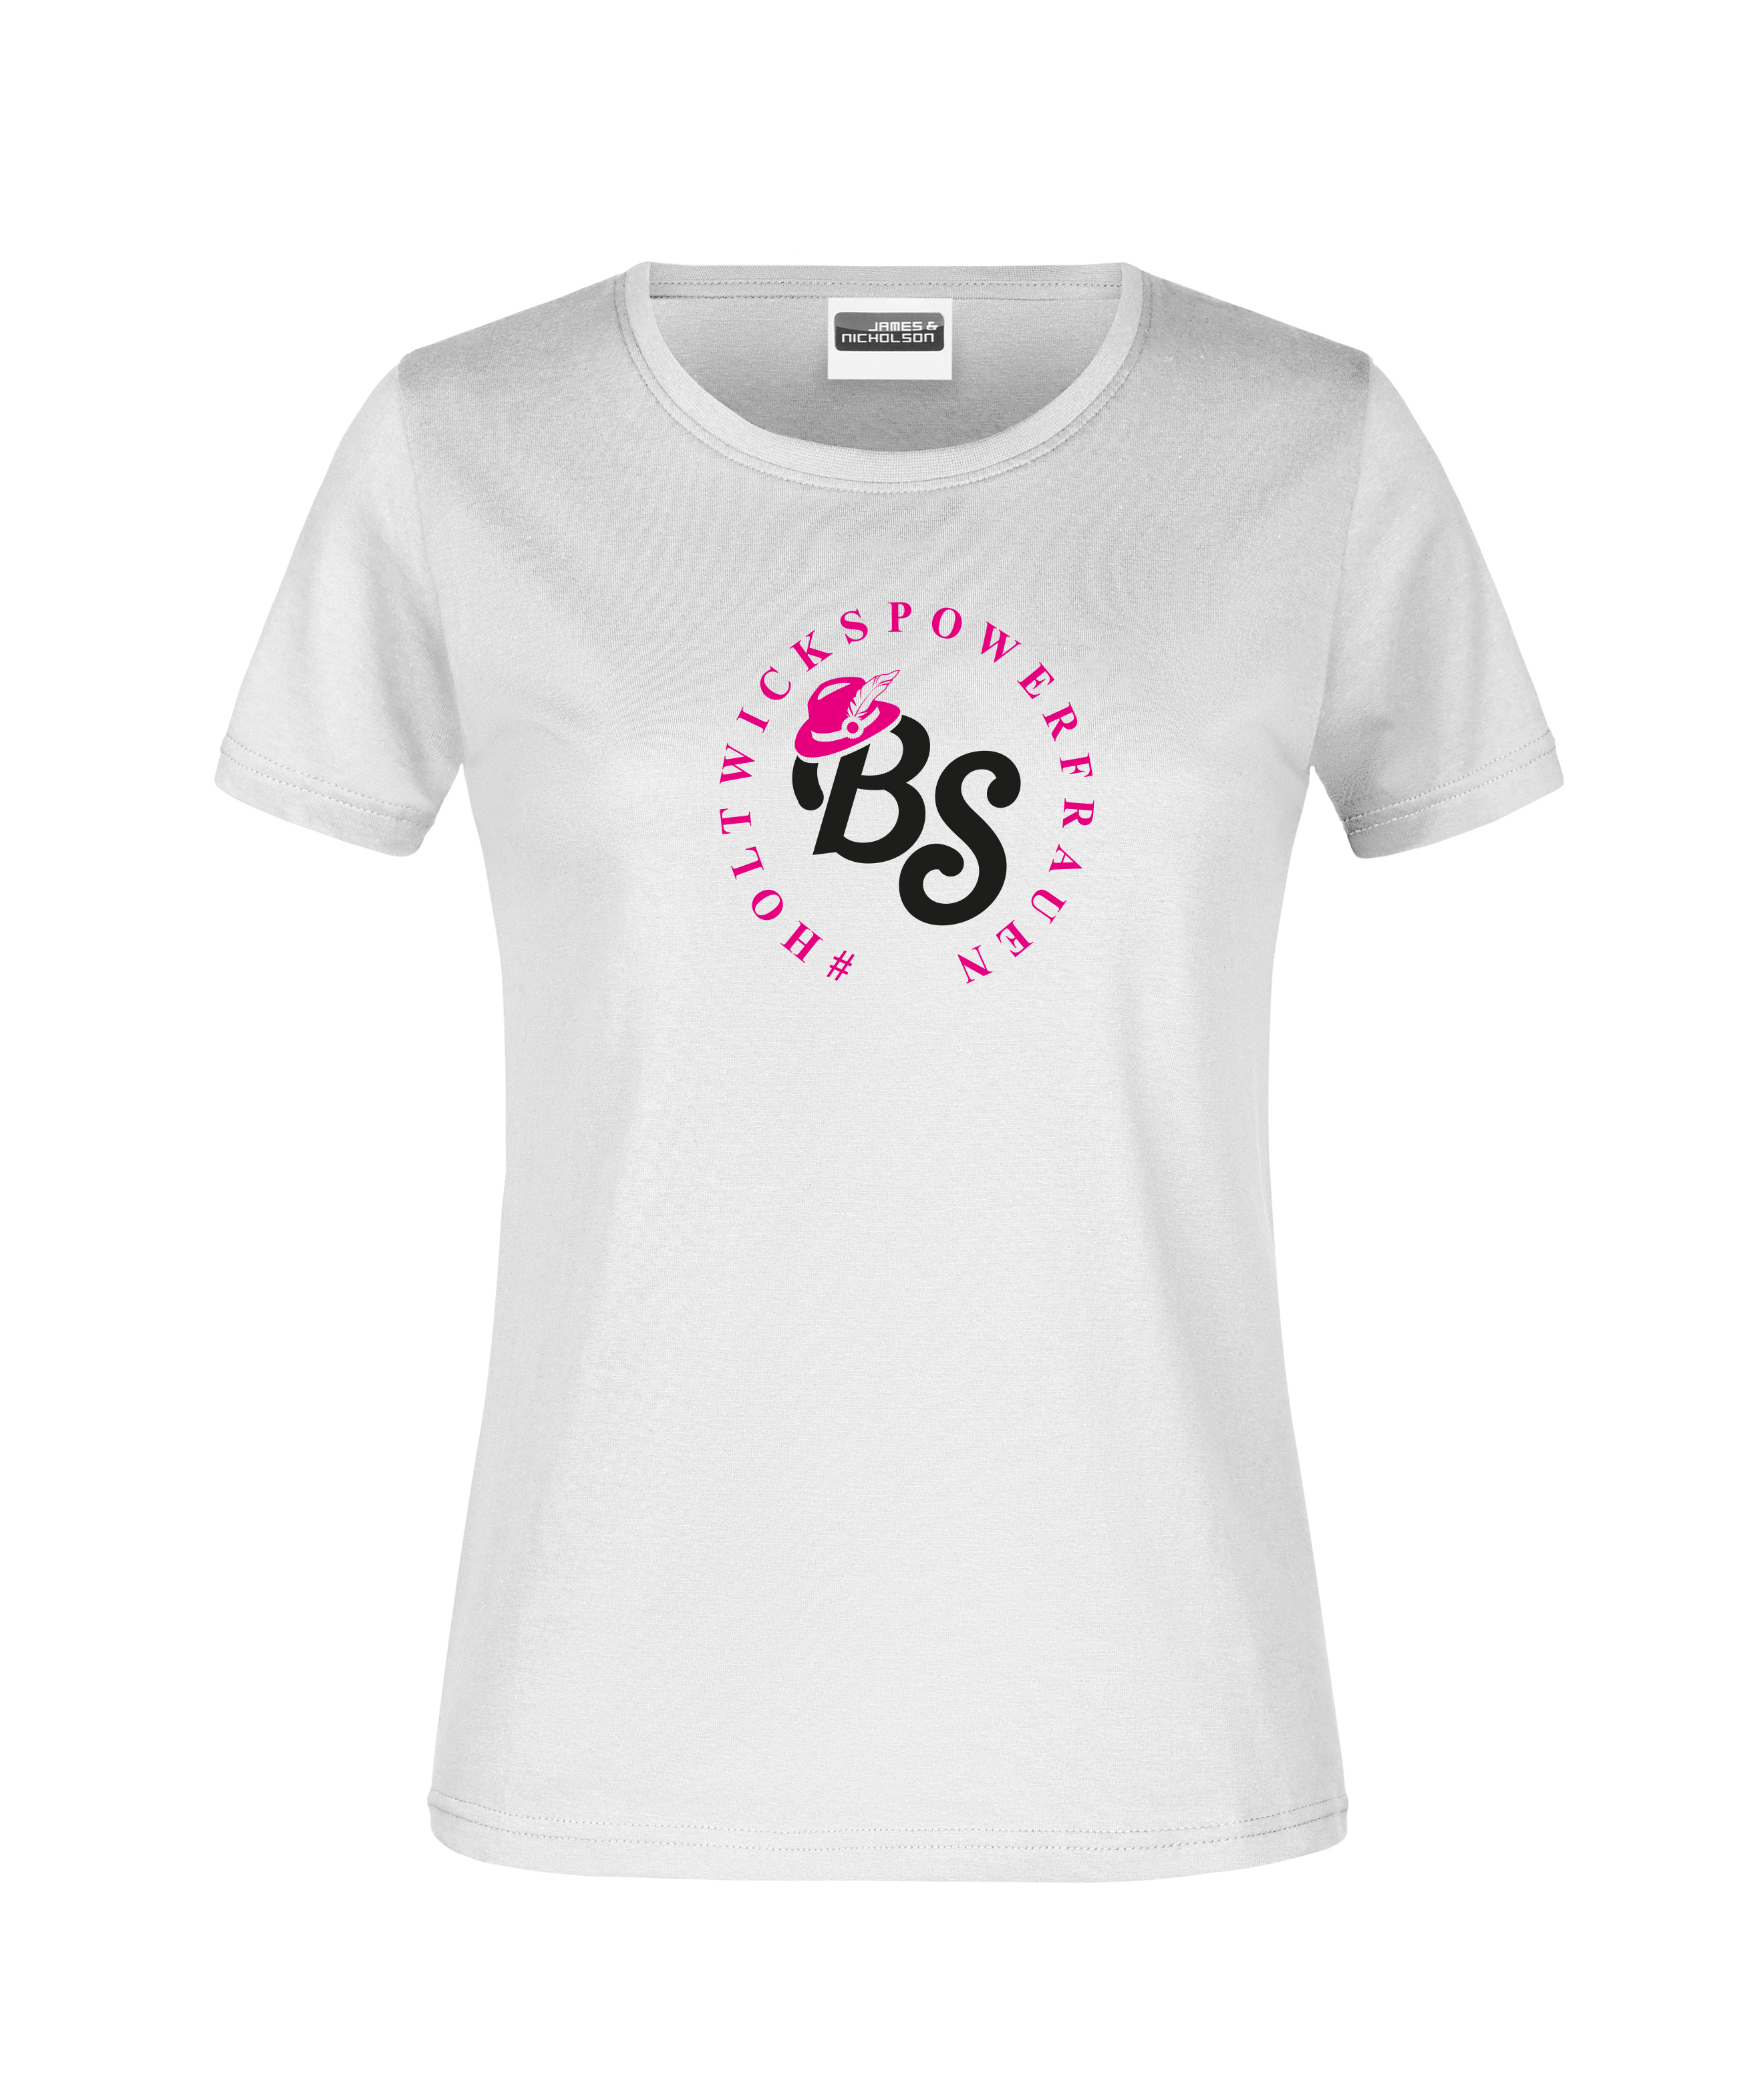 "#Holtwickspowerfrauen" - Damen-T-Shirt